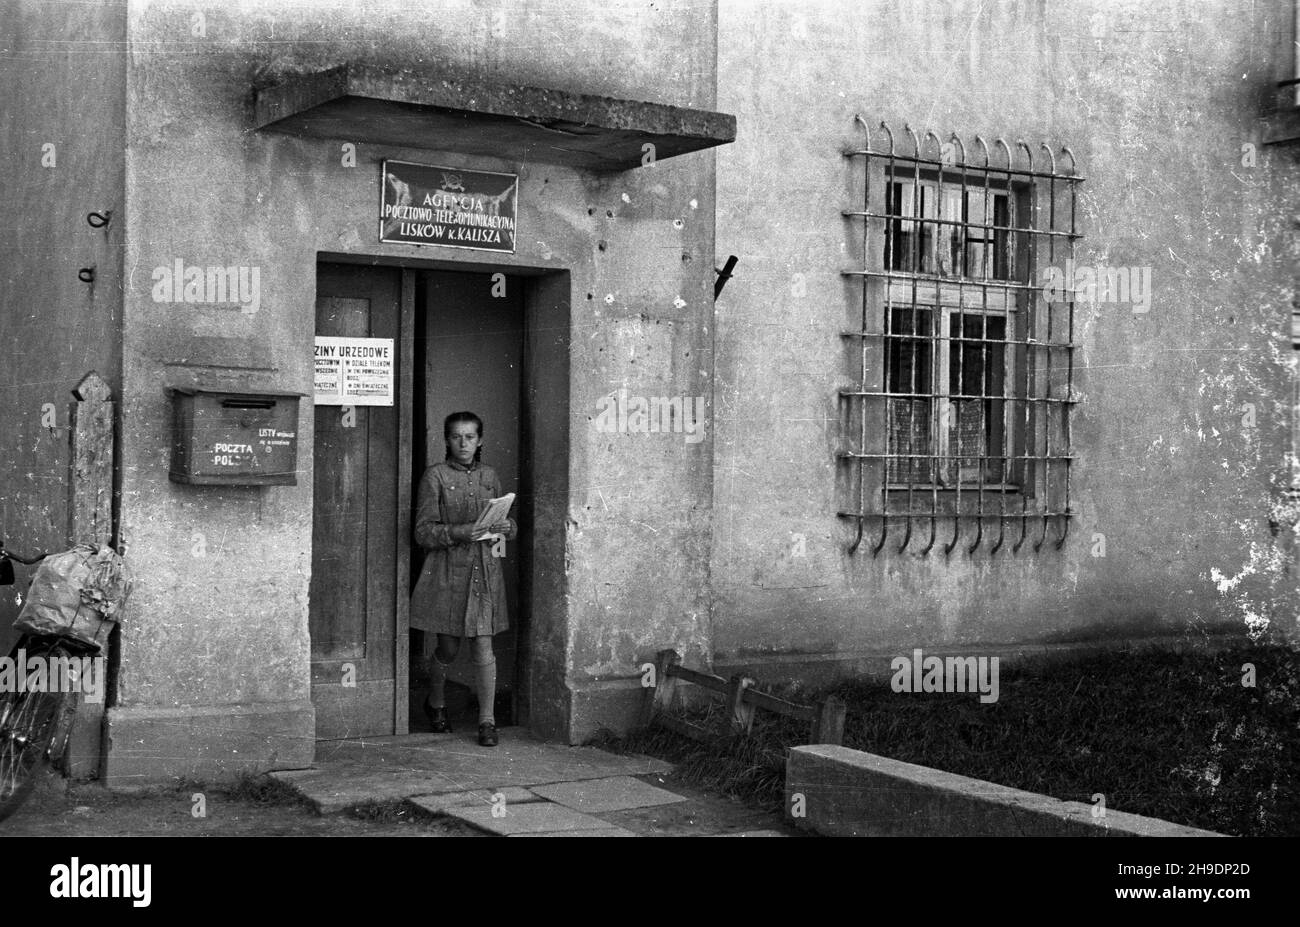 Lisków, 1947-10. Dziewczyna wychodz¹ca z budynku poczty. wb/gr  PAP    Dok³adny dzieñ wydarzenia nieustalony.      Liskow, Oct. 1947. A girl leaving the post office.  wb/gr  PAP Stock Photo